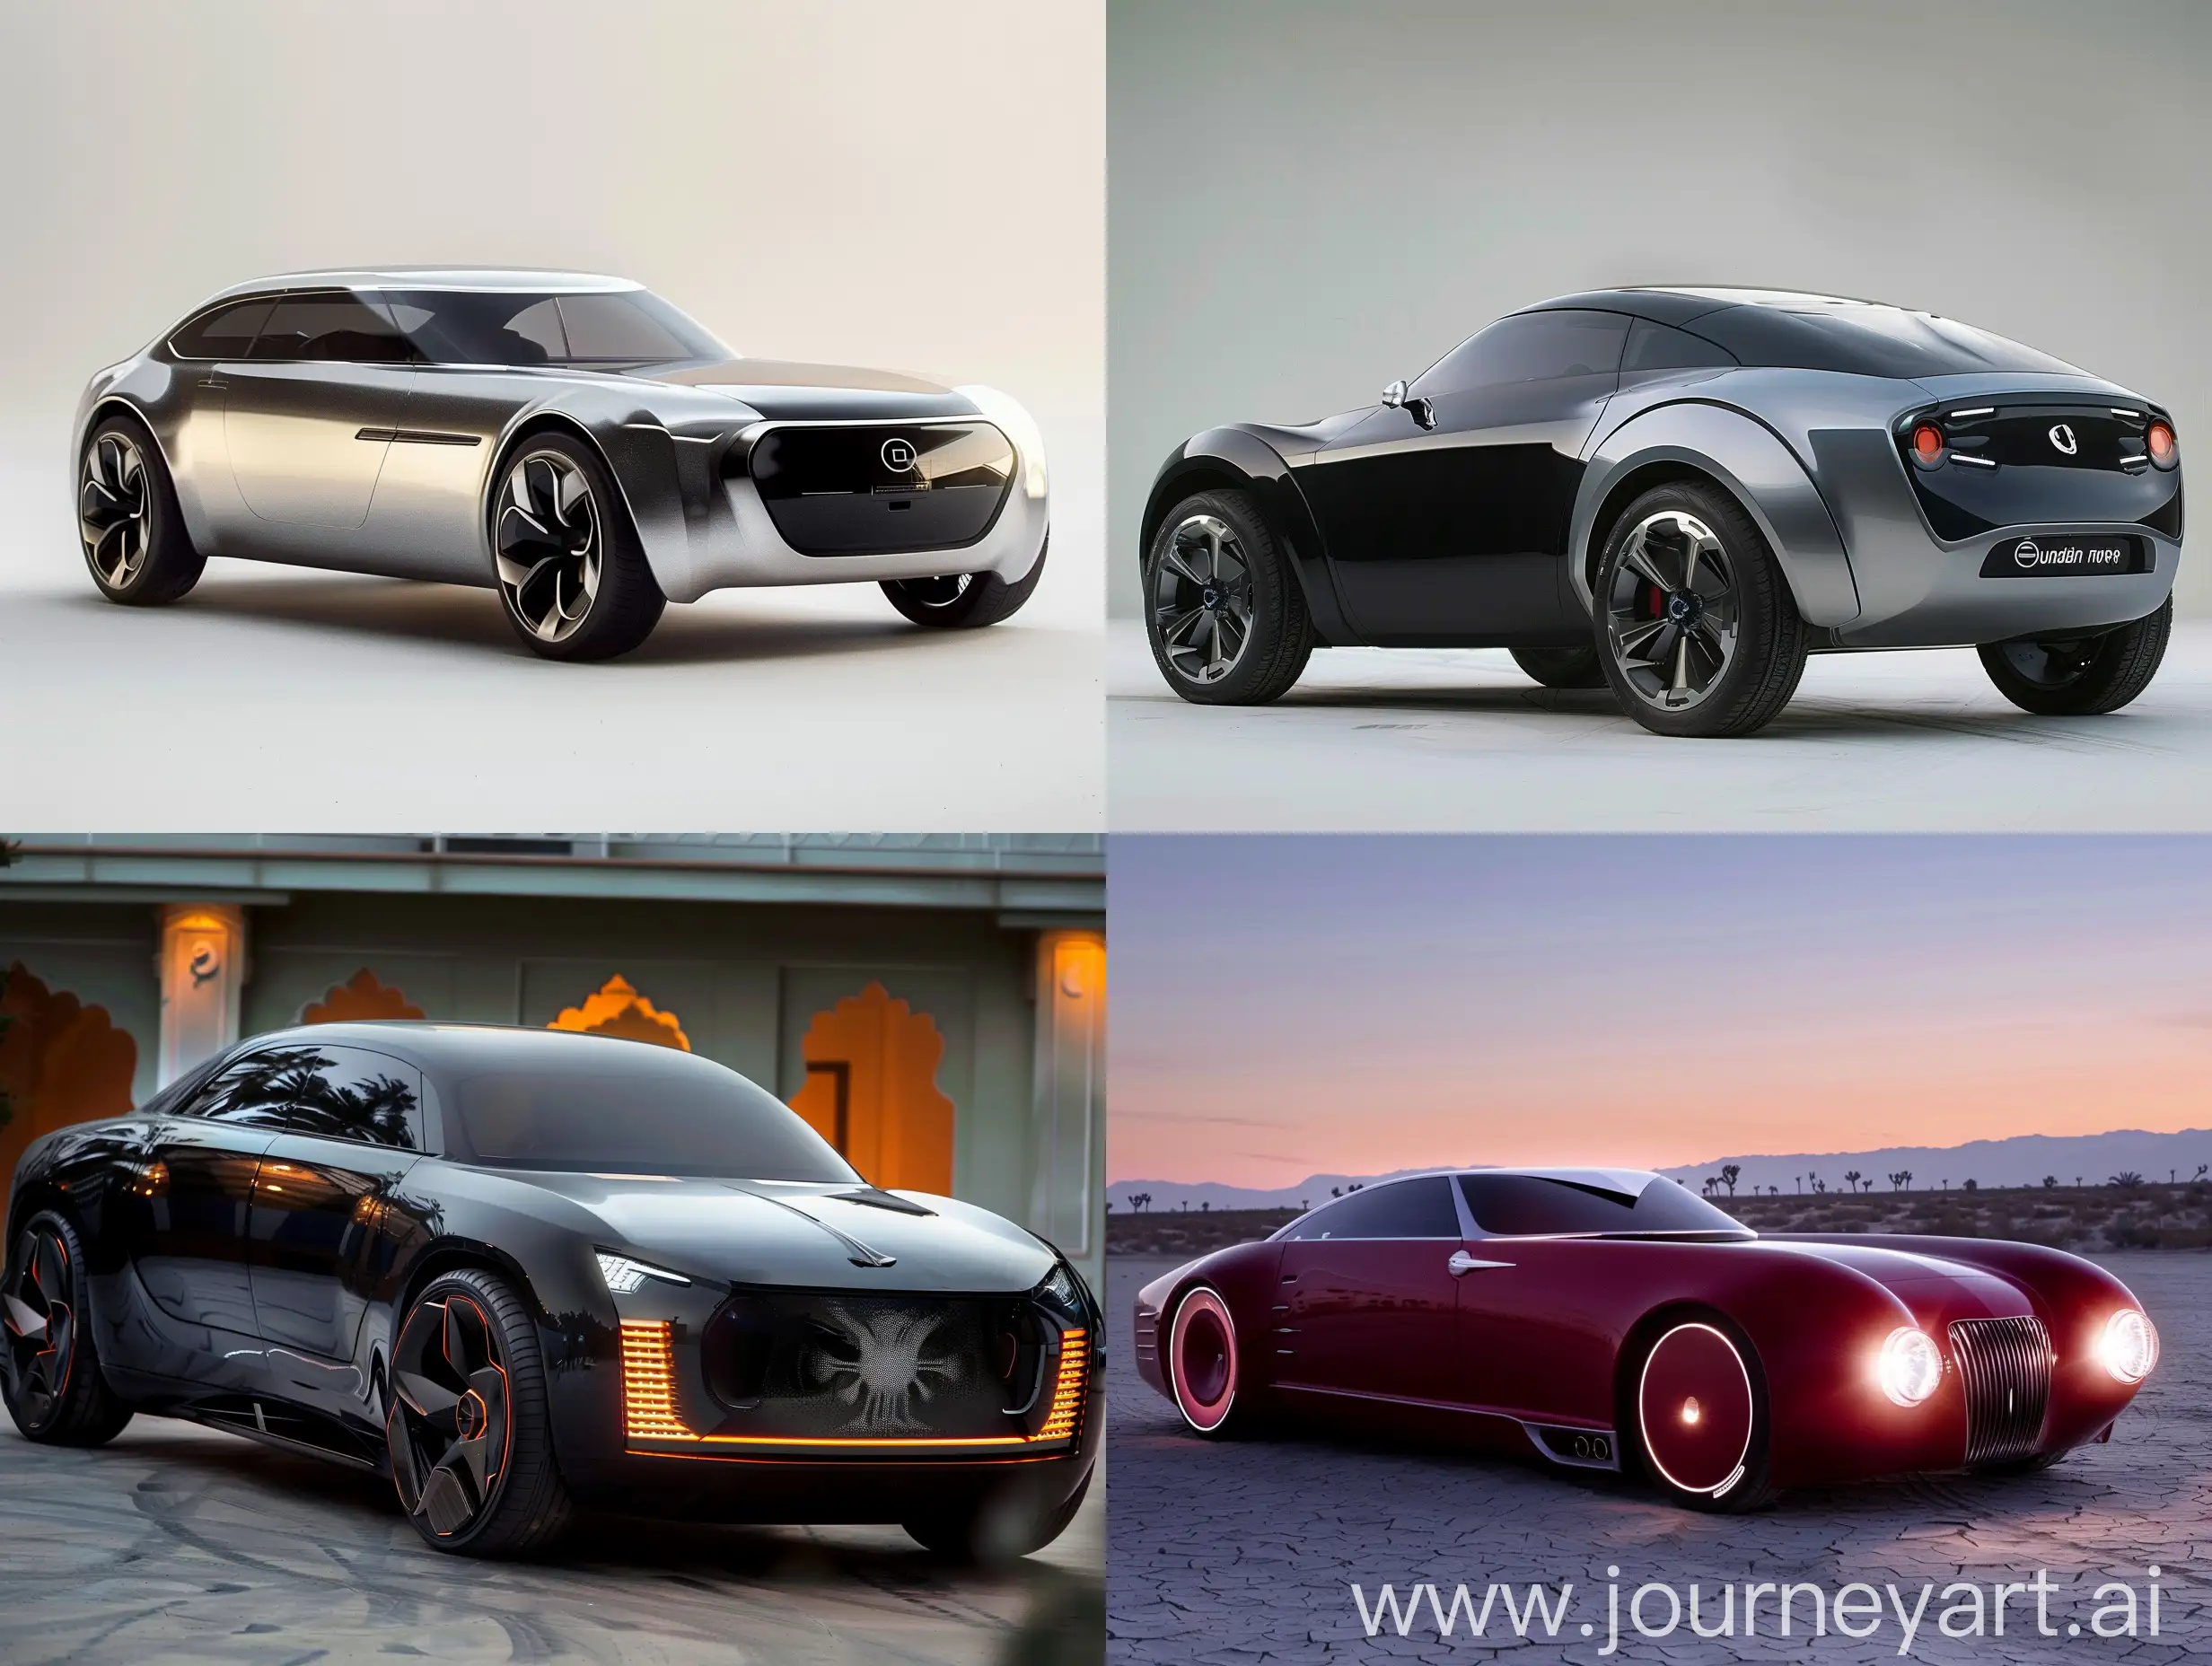 Futuristic-Reborn-Hindustan-Motors-Ambassador-Car-V6-AR-43-Image-36278